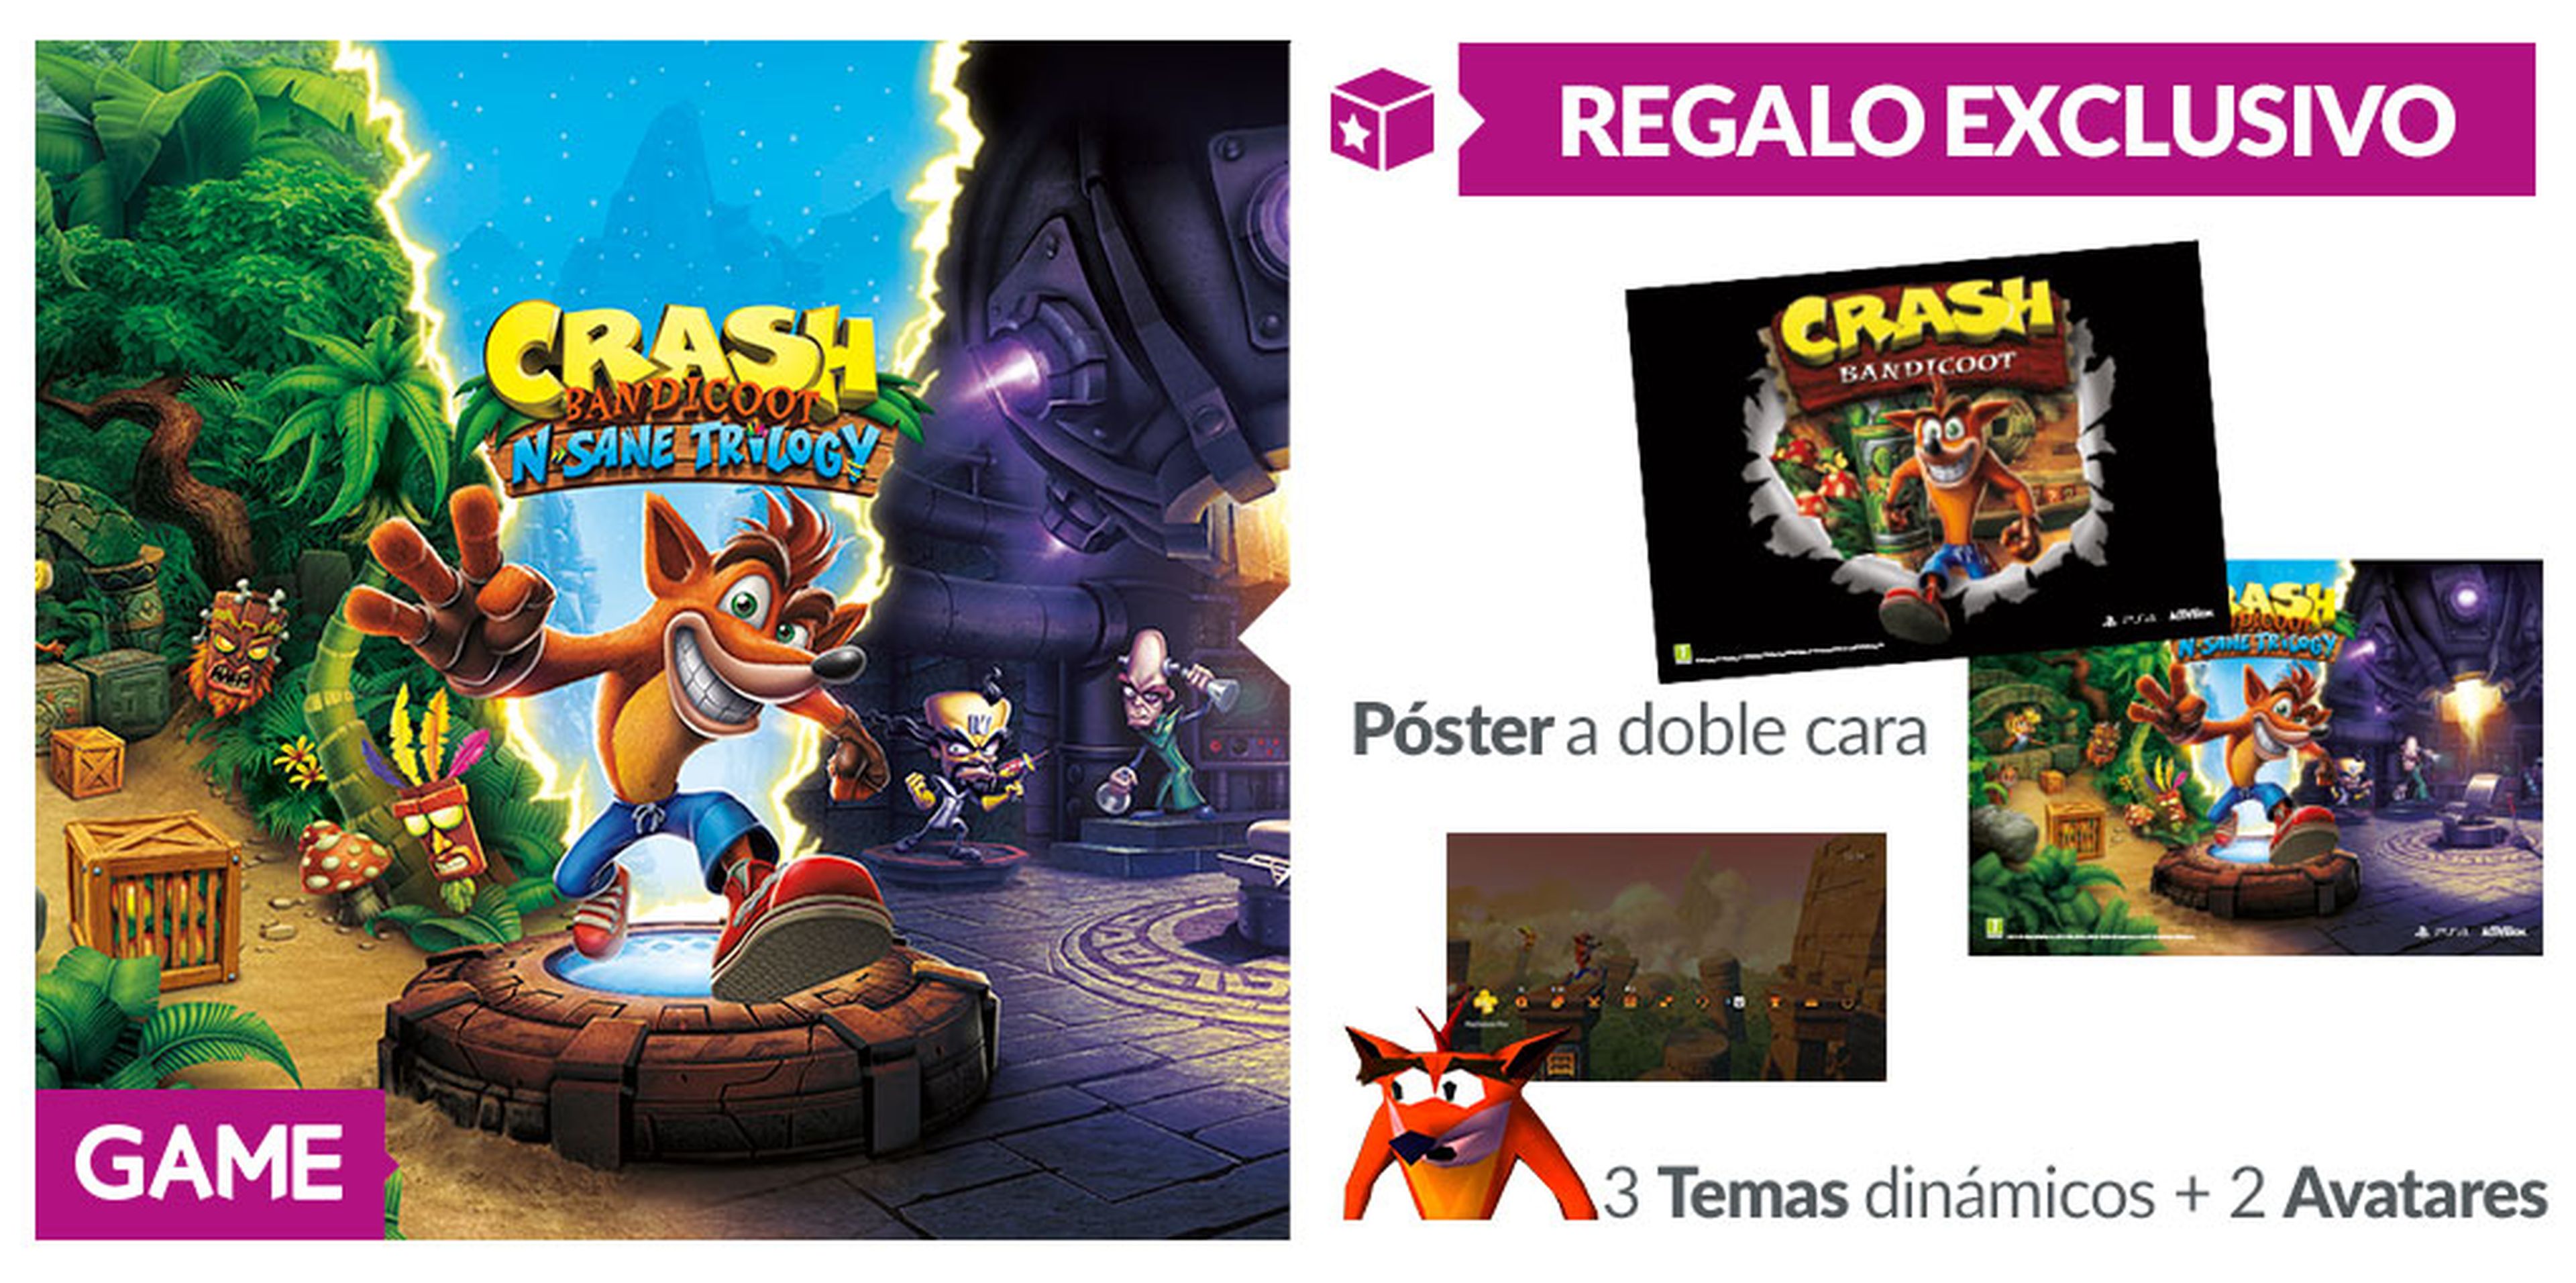 Crash Bandicoot N. Sane Trilogy GAME